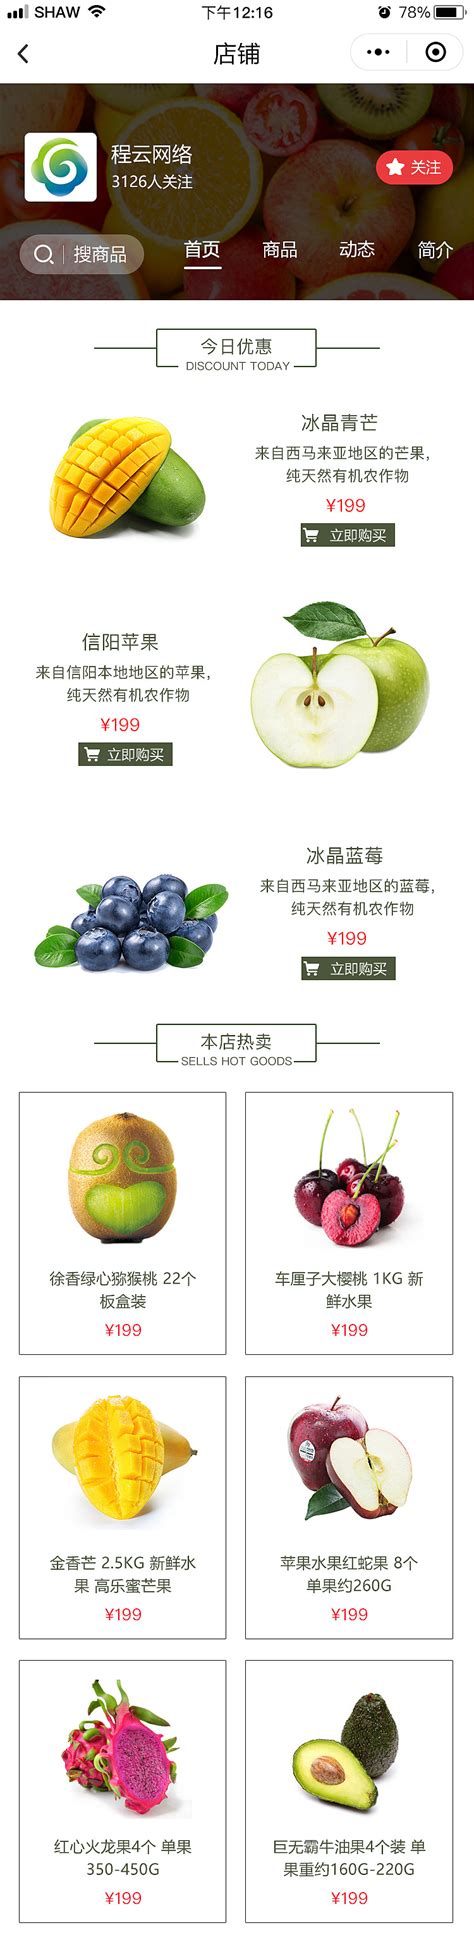 农业移动app设计_王丹_【68Design】